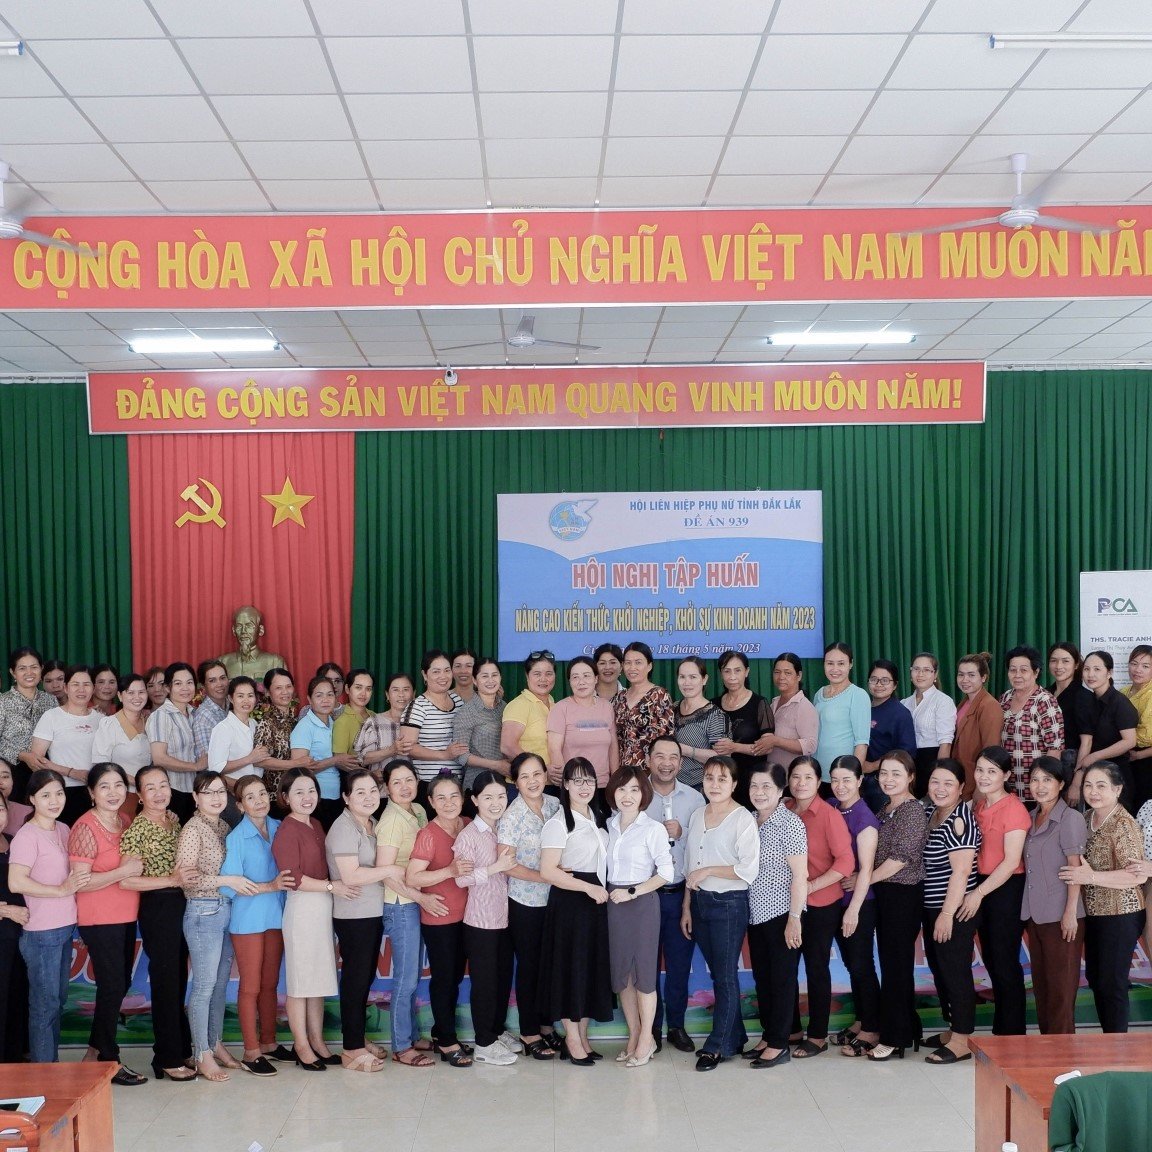 đào tạo khởi nghiệp cho hội LHPN đắk lắk tại huyện ku kuin